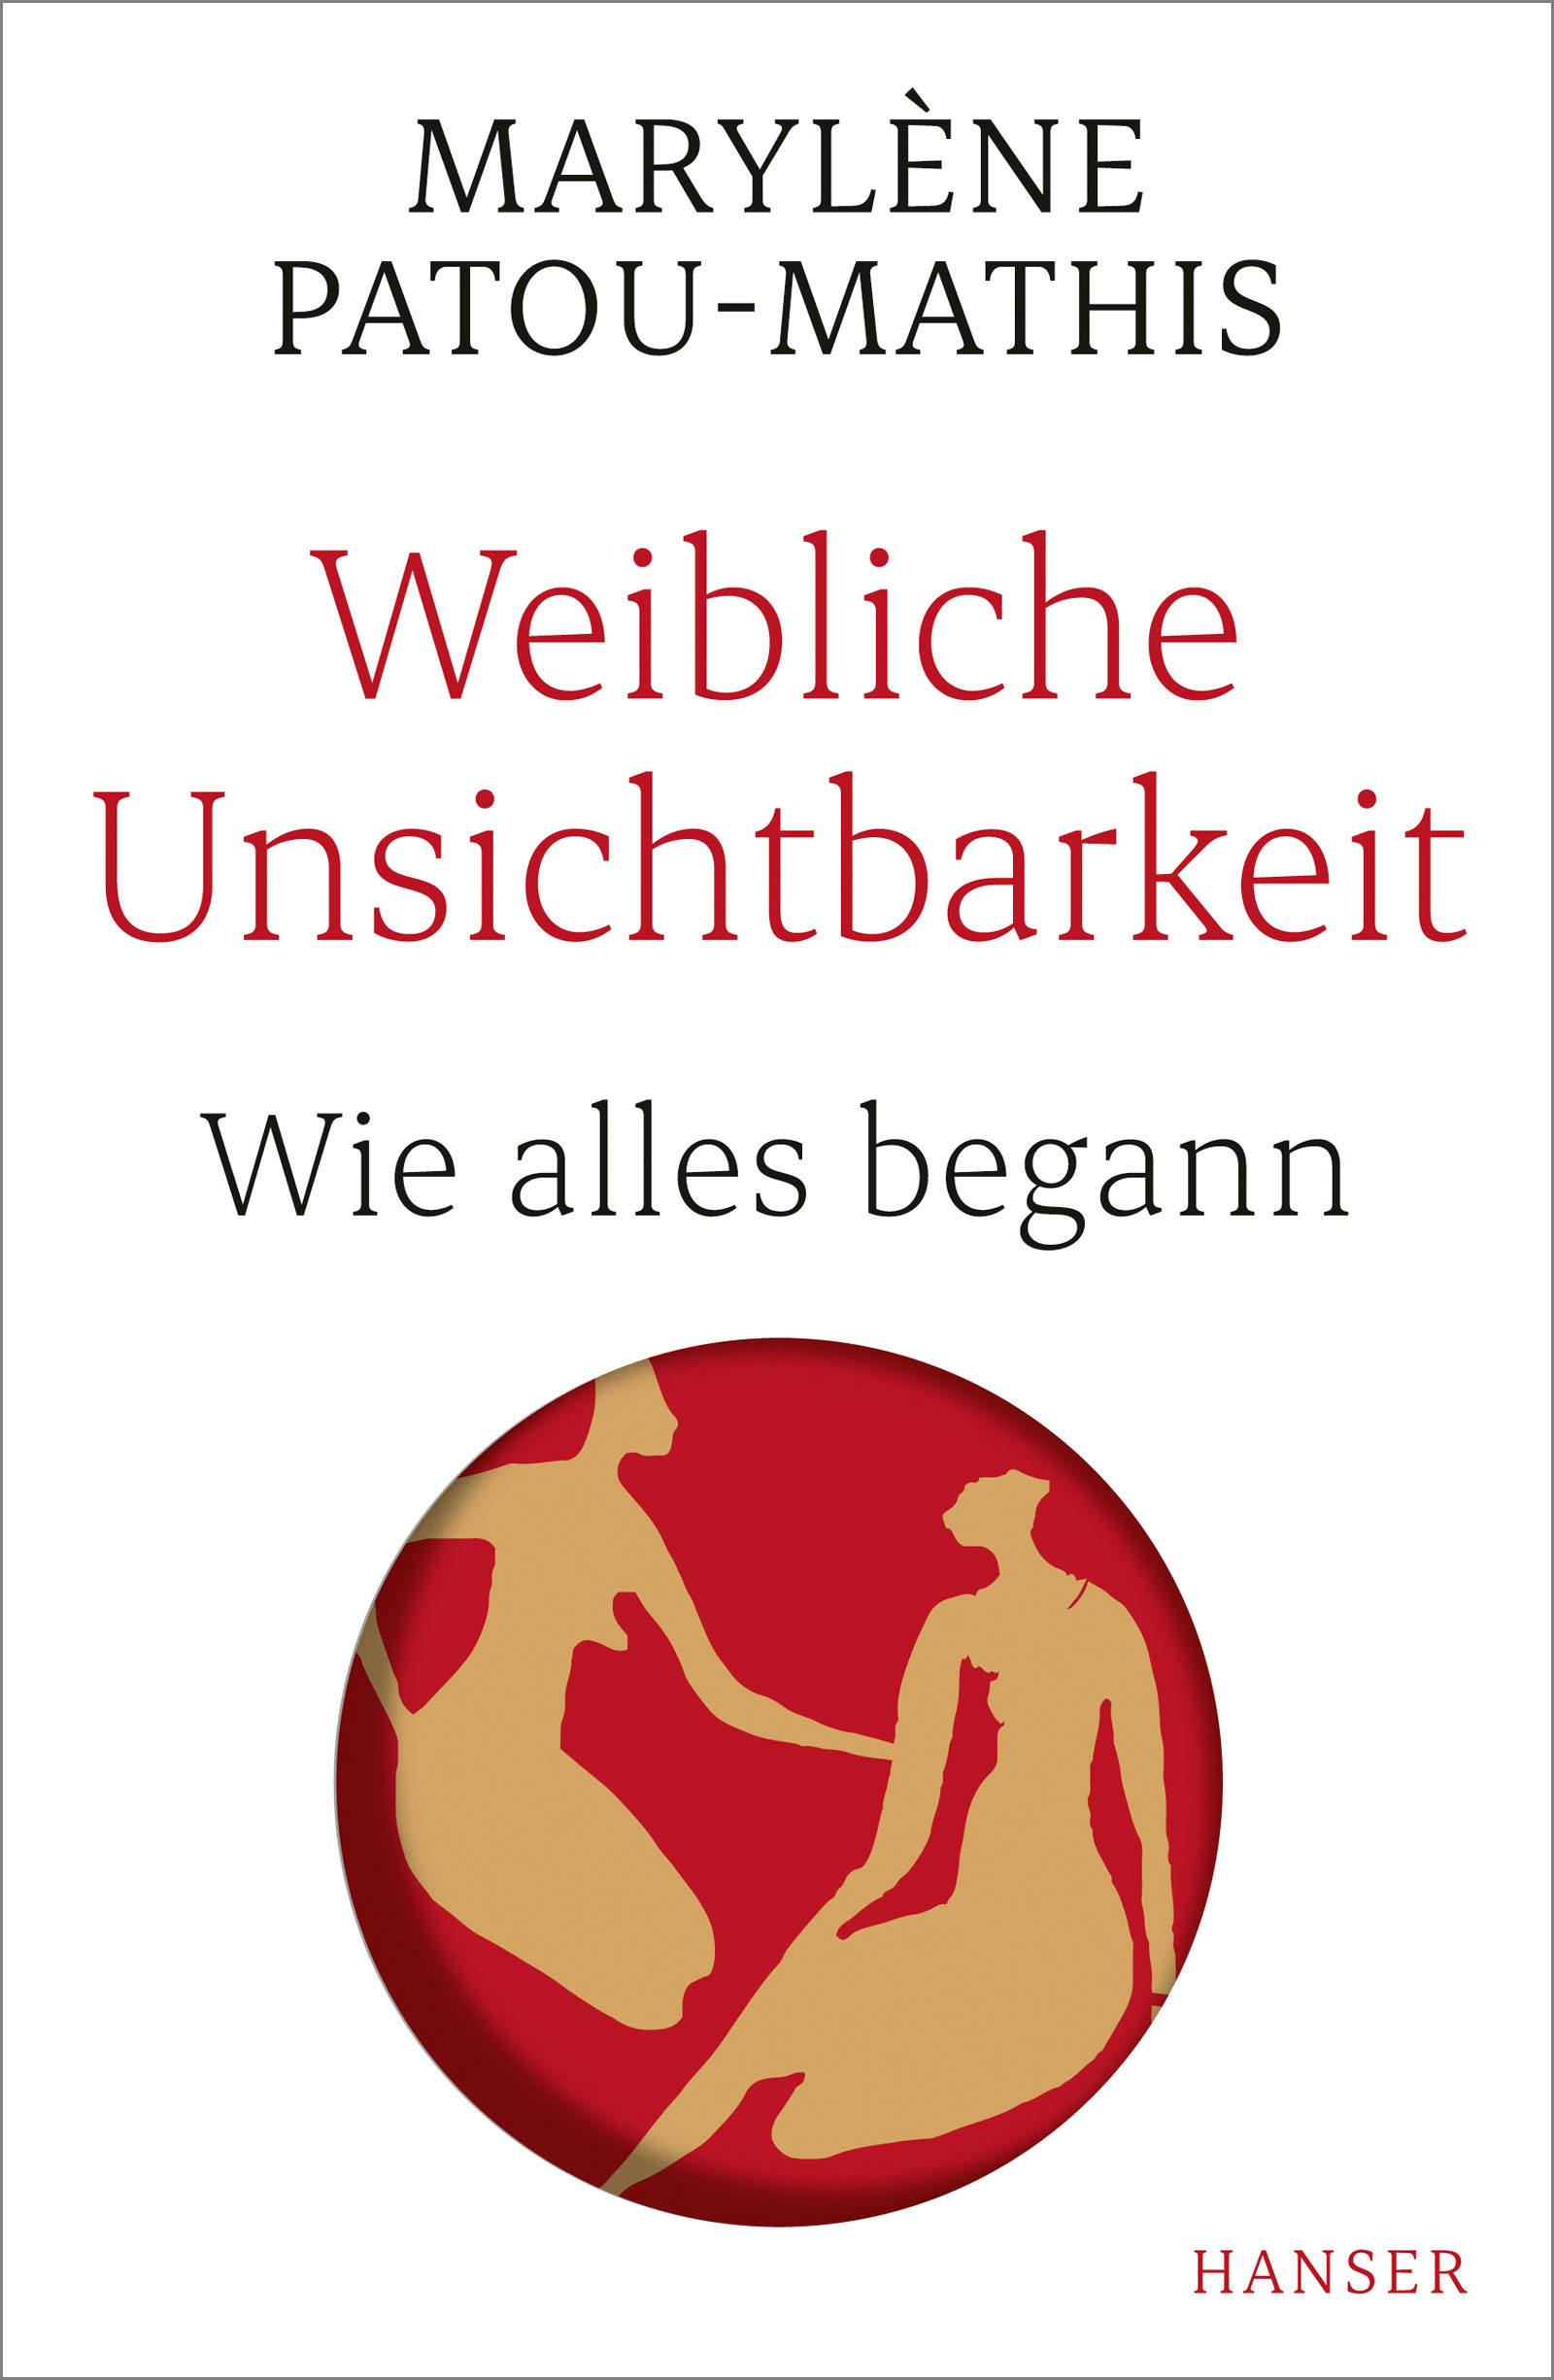 Marylène Patou-Mathis: Weibliche Unsichtbarkeit (Hardcover, German language, 2021, Hanser Verlag)